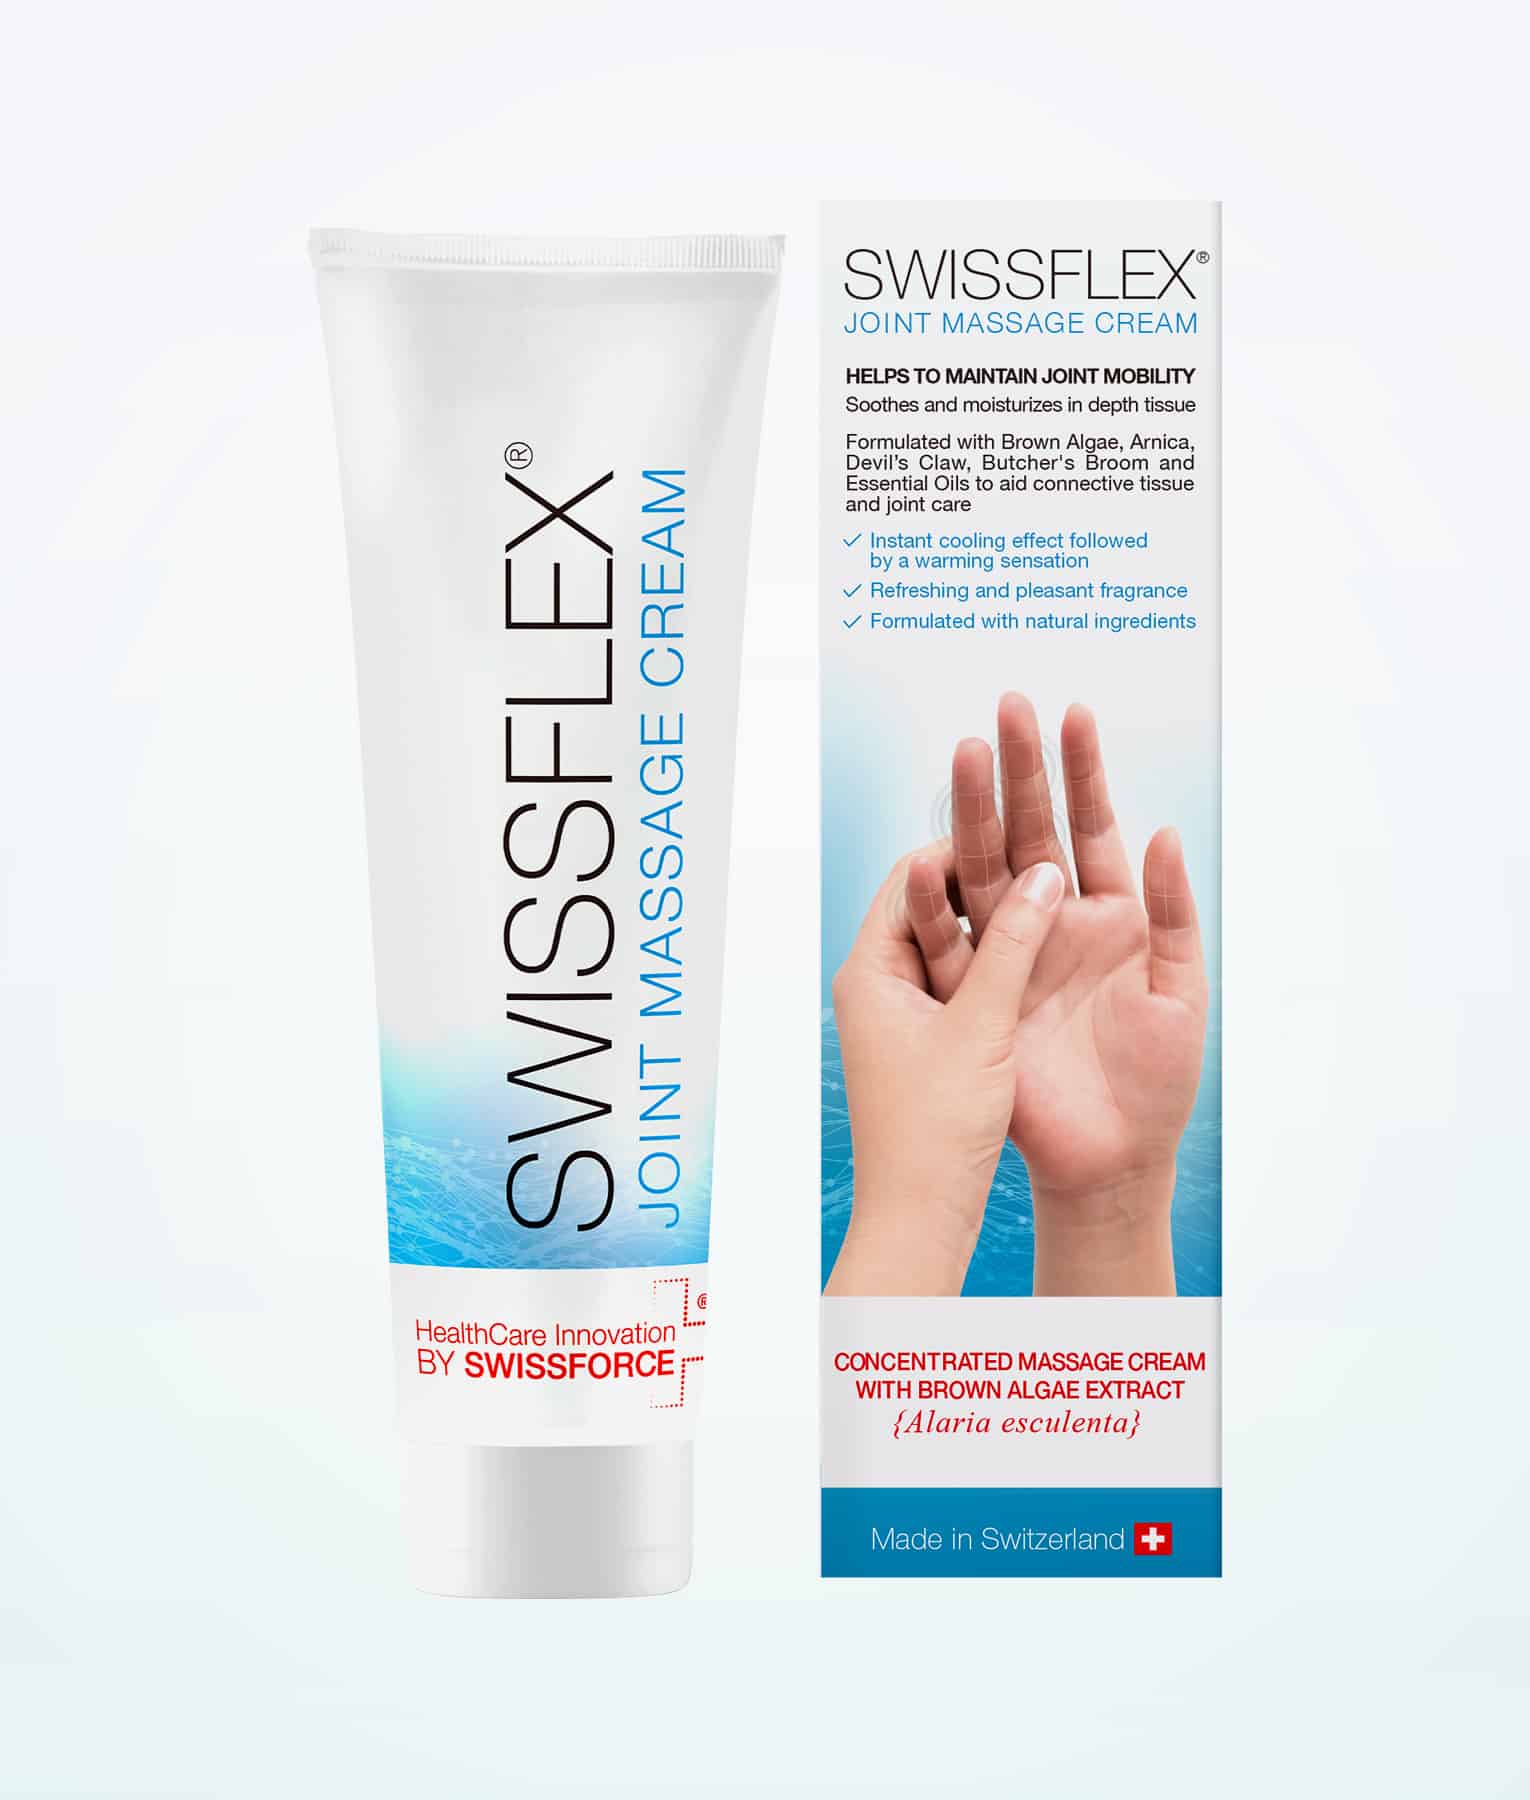 swissflex-joint-massage-cream-mejores-productos-naturales-para el cuidado de la piel suiza